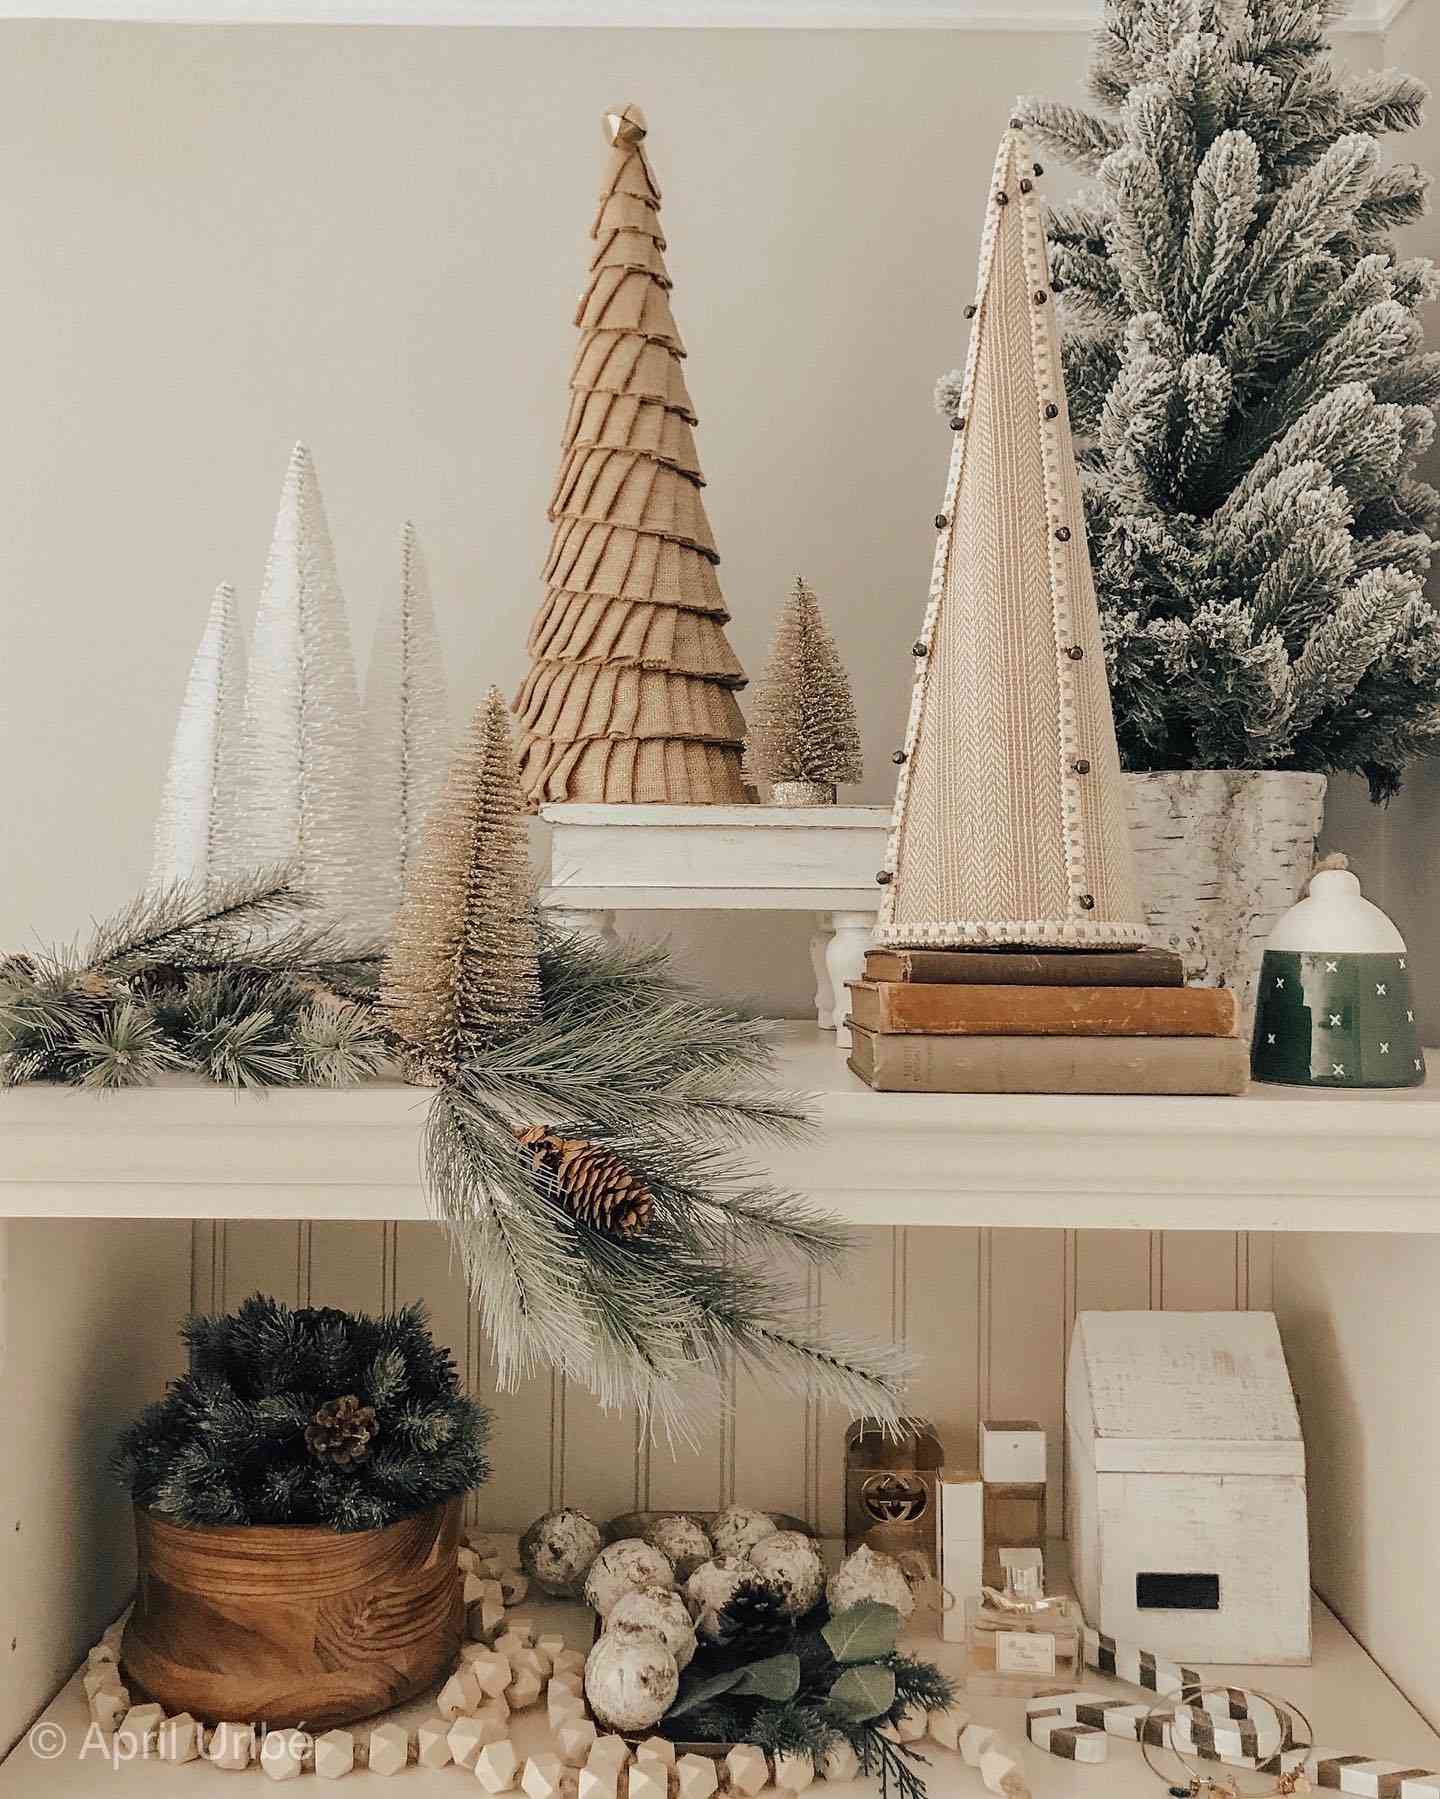 múltiples figuritas blancas del árbol de navidad